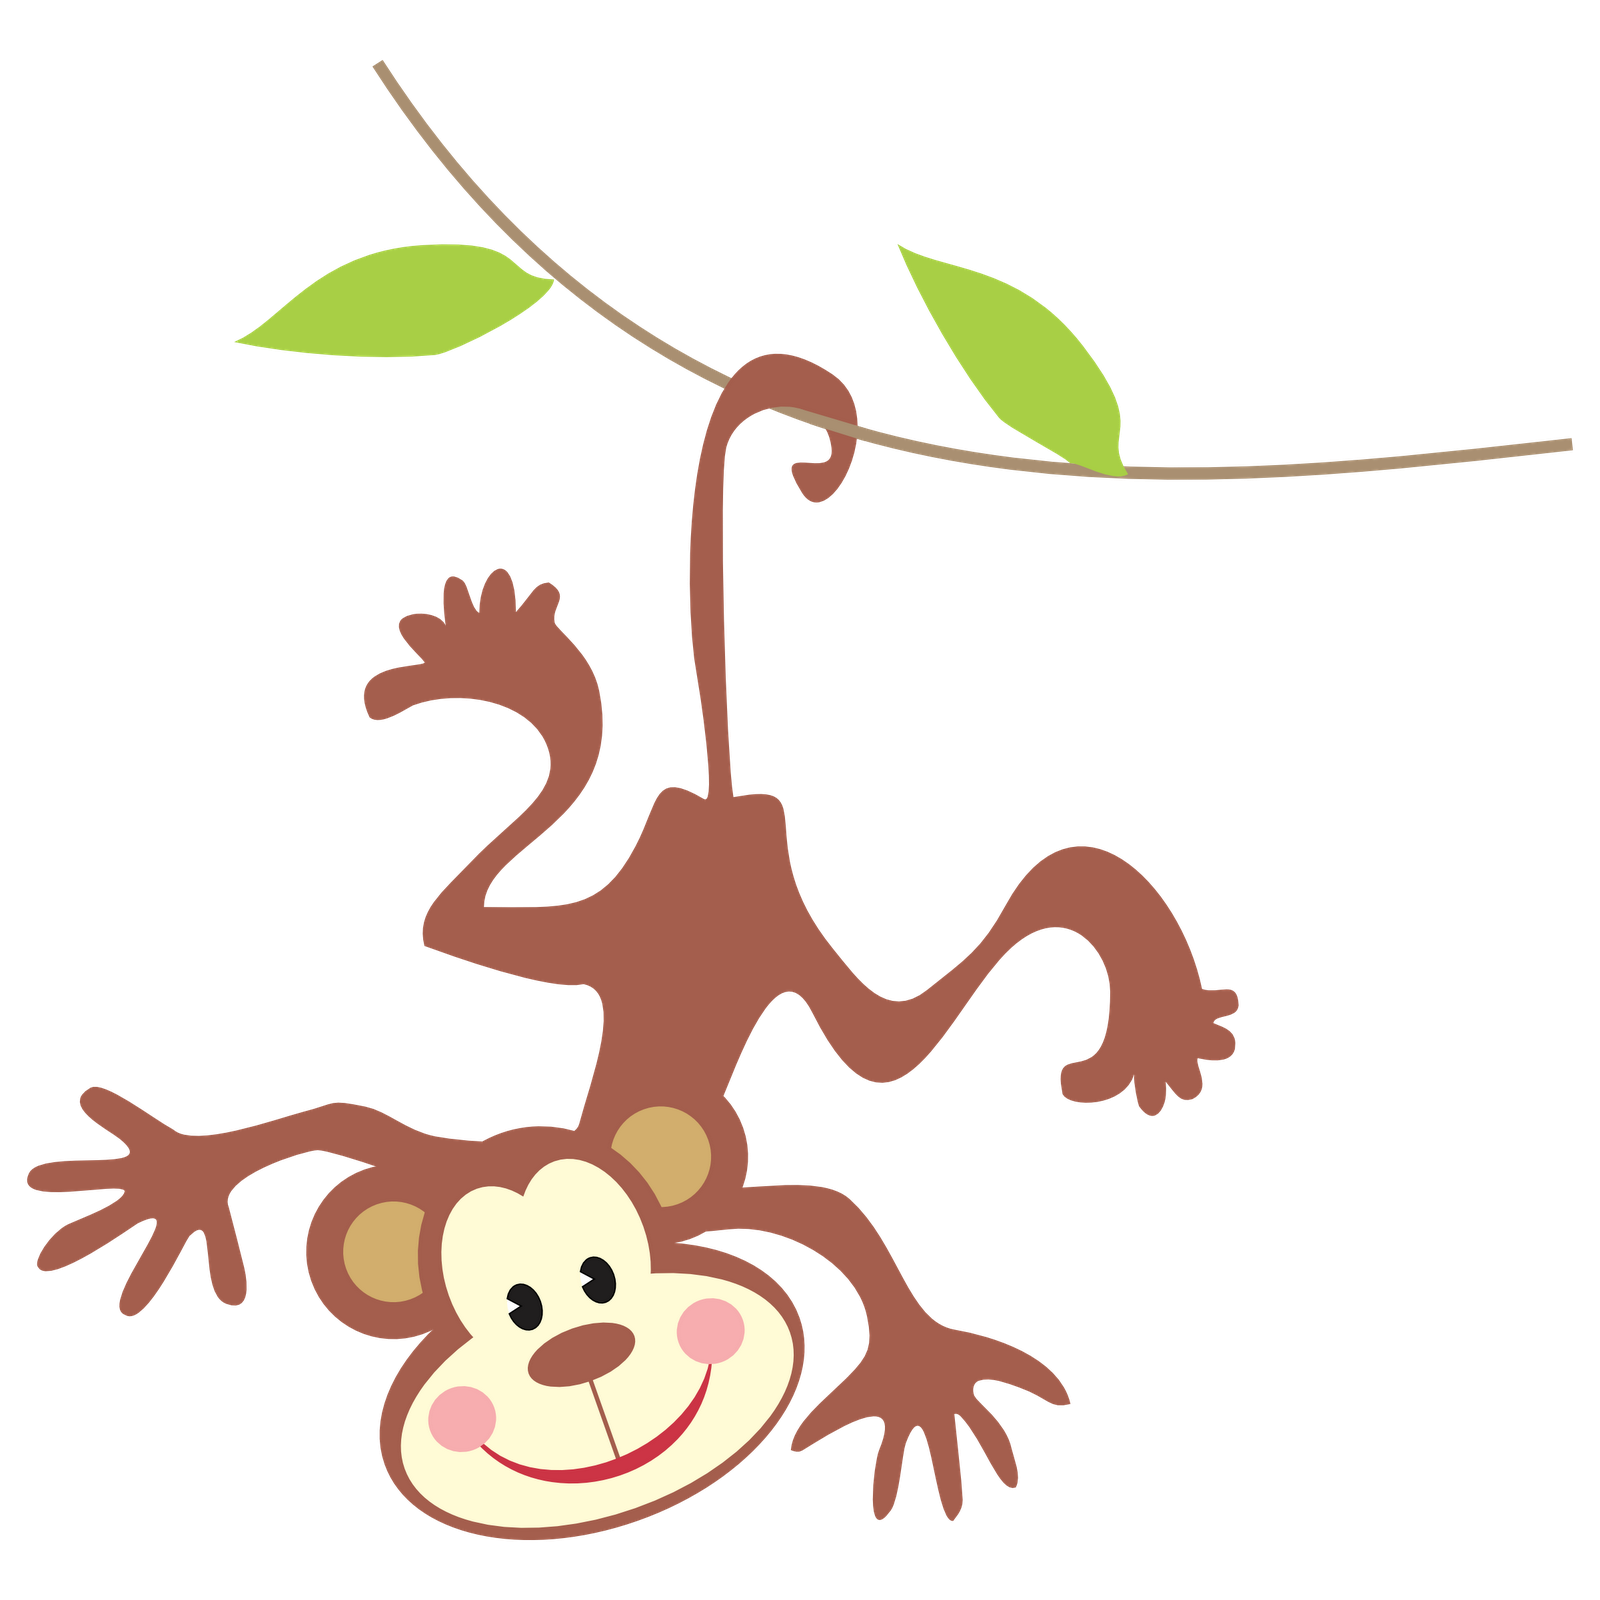 Hanging Monkey Clipart Clipar - Hanging Monkey Clipart